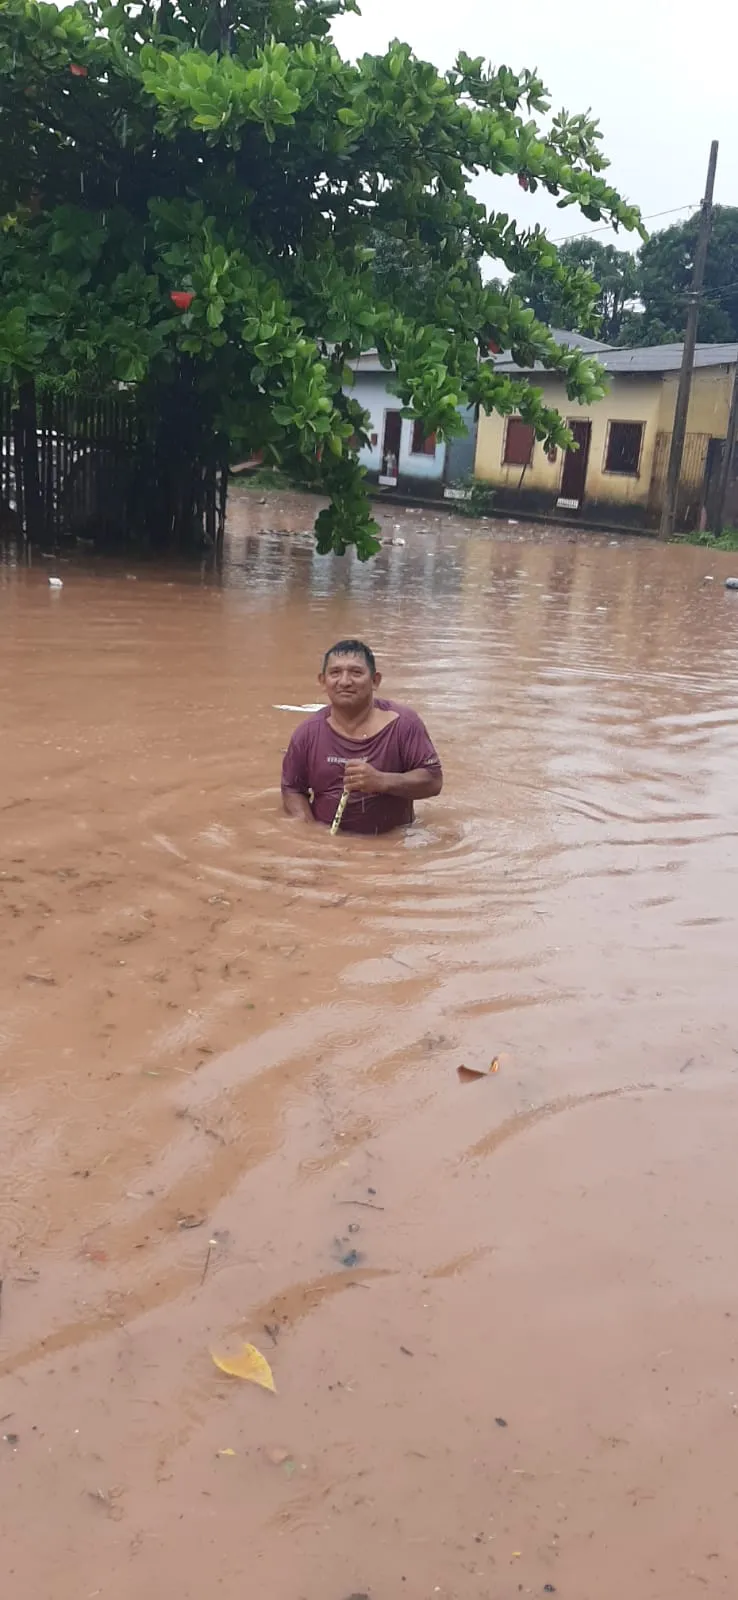 Caos: chuva deixa casas e veículos submersos em Santarém